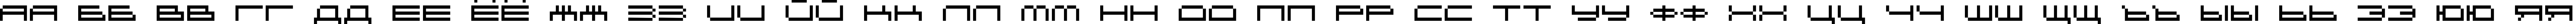 Пример написания русского алфавита шрифтом DS OlymPix